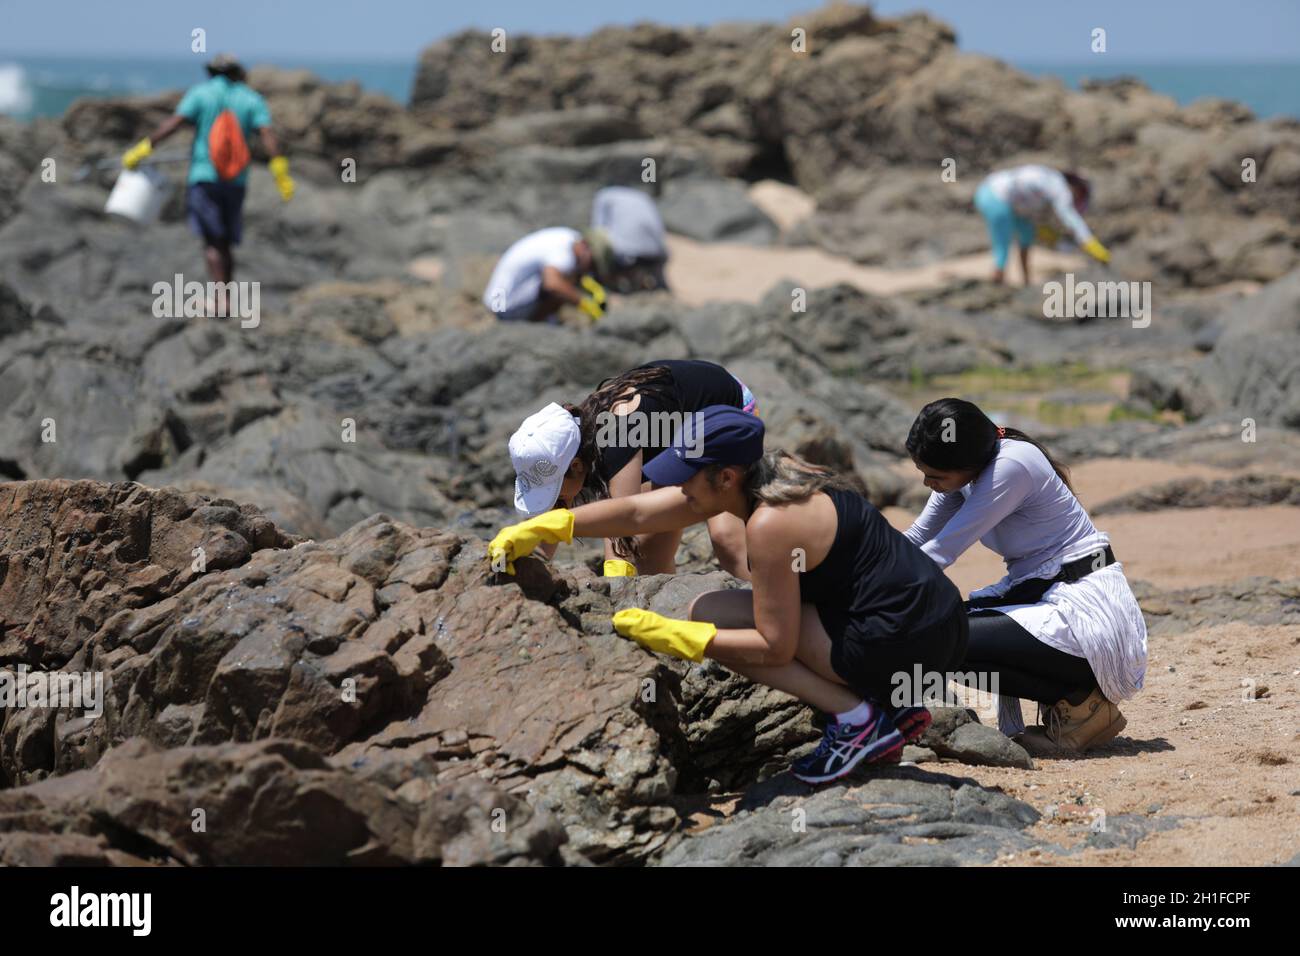 salvador, bahia / brasile - 13 ottobre 2019: I volontari ripuliscono l'olio a Jardim de Allah Beach, il sito è stato colpito da fuoriuscite di olio in mare. *** locale Foto Stock